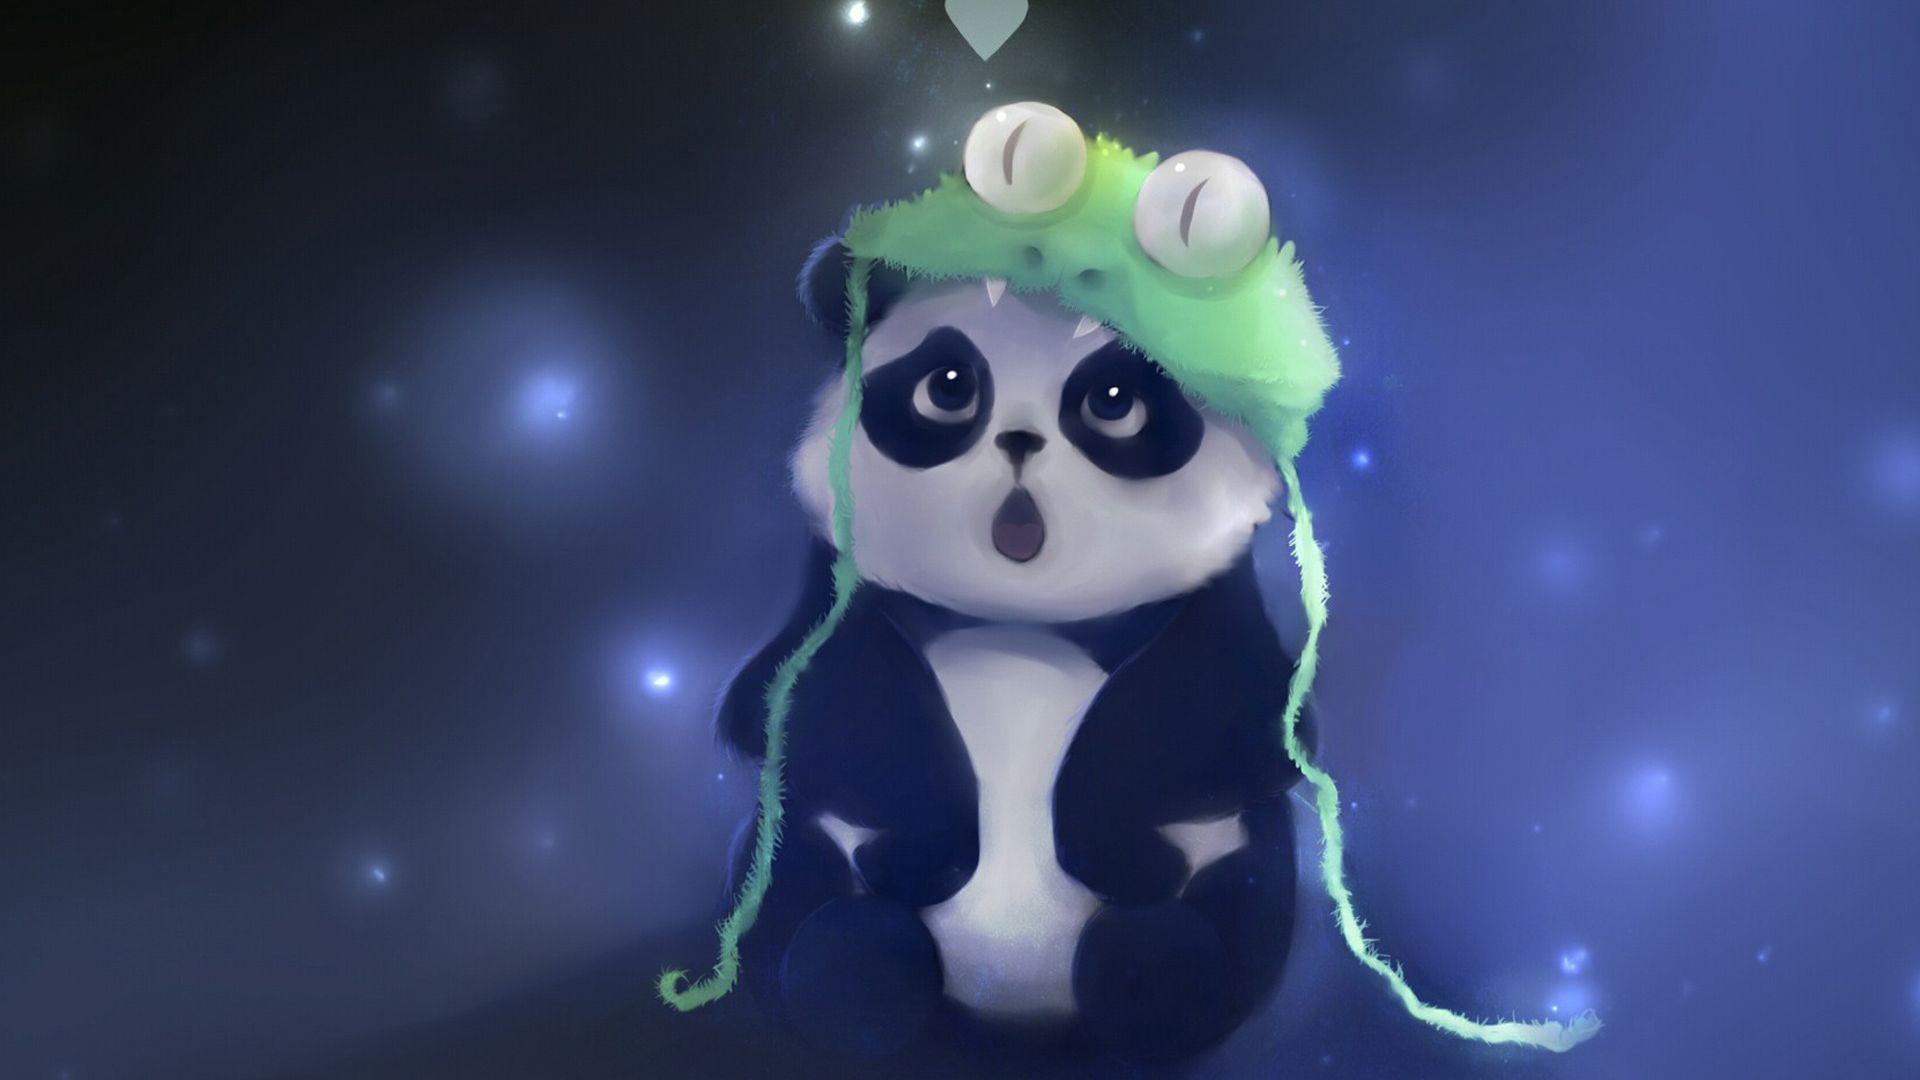 Cute Artistic Panda Wallpaper